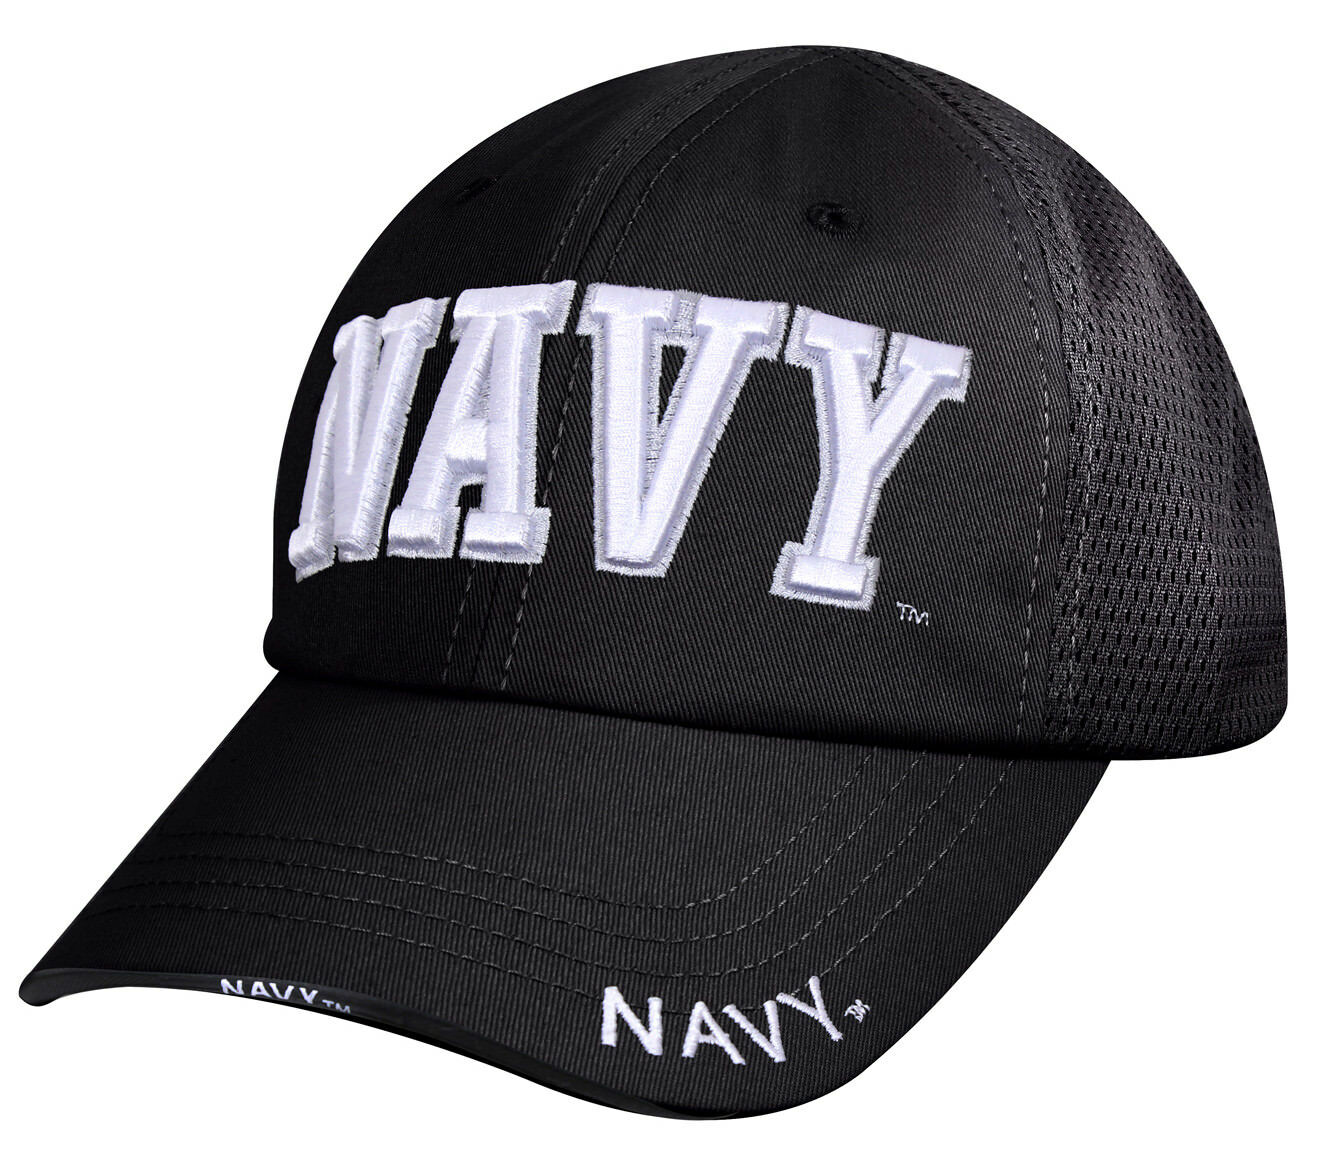 Rothco Navy Mesh Back Tactical Cap - Black